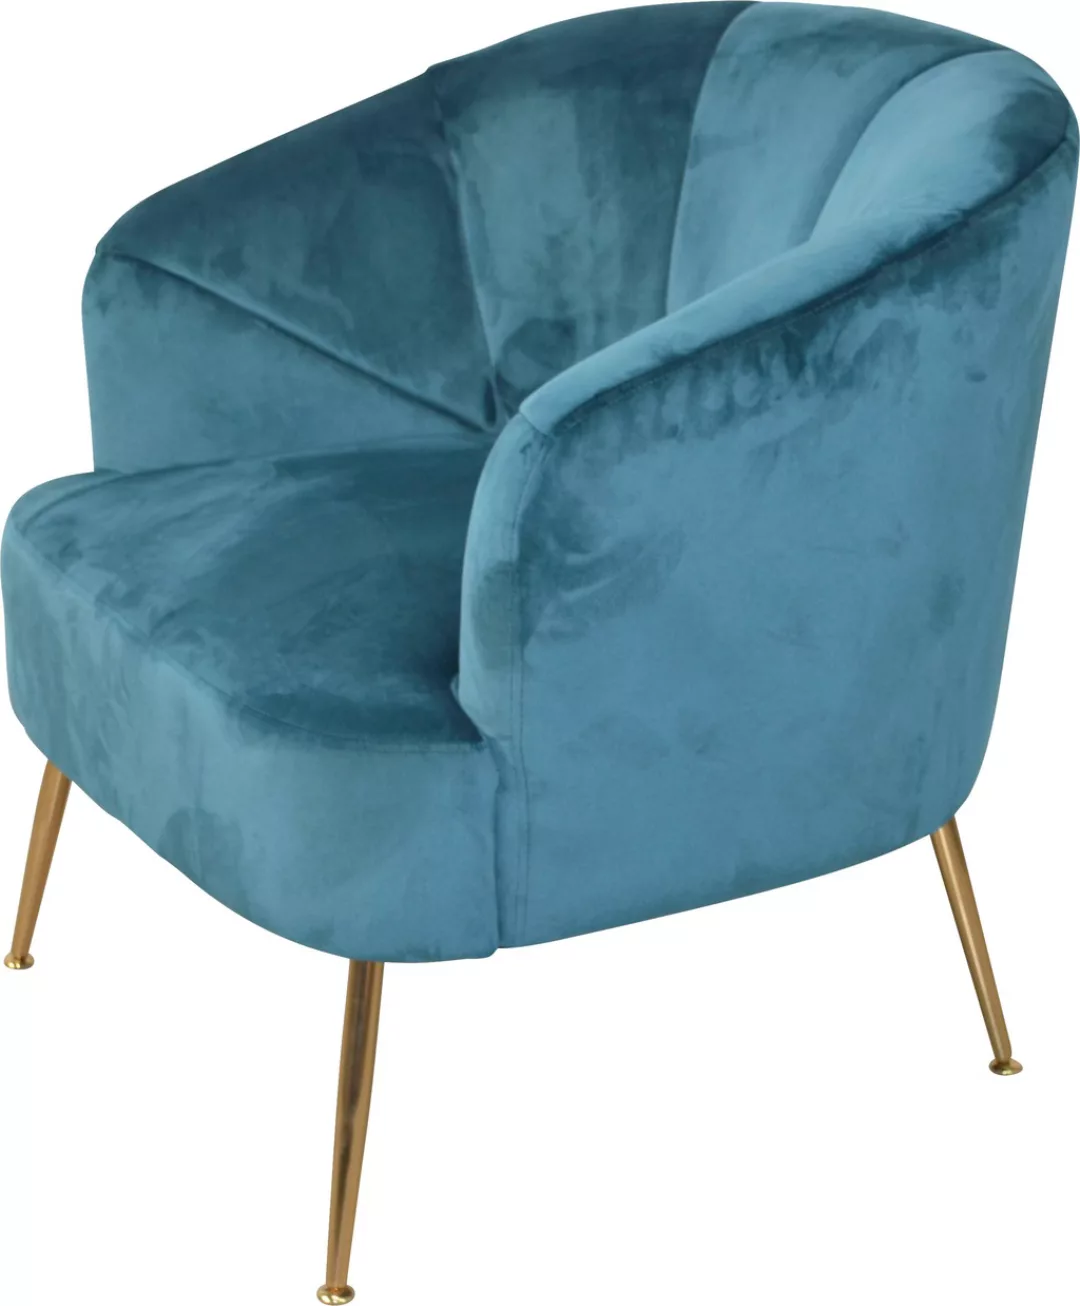 HOFMANN LIVING AND MORE Sessel, Beine aus Stahlrohr, goldfarben lackiert, S günstig online kaufen